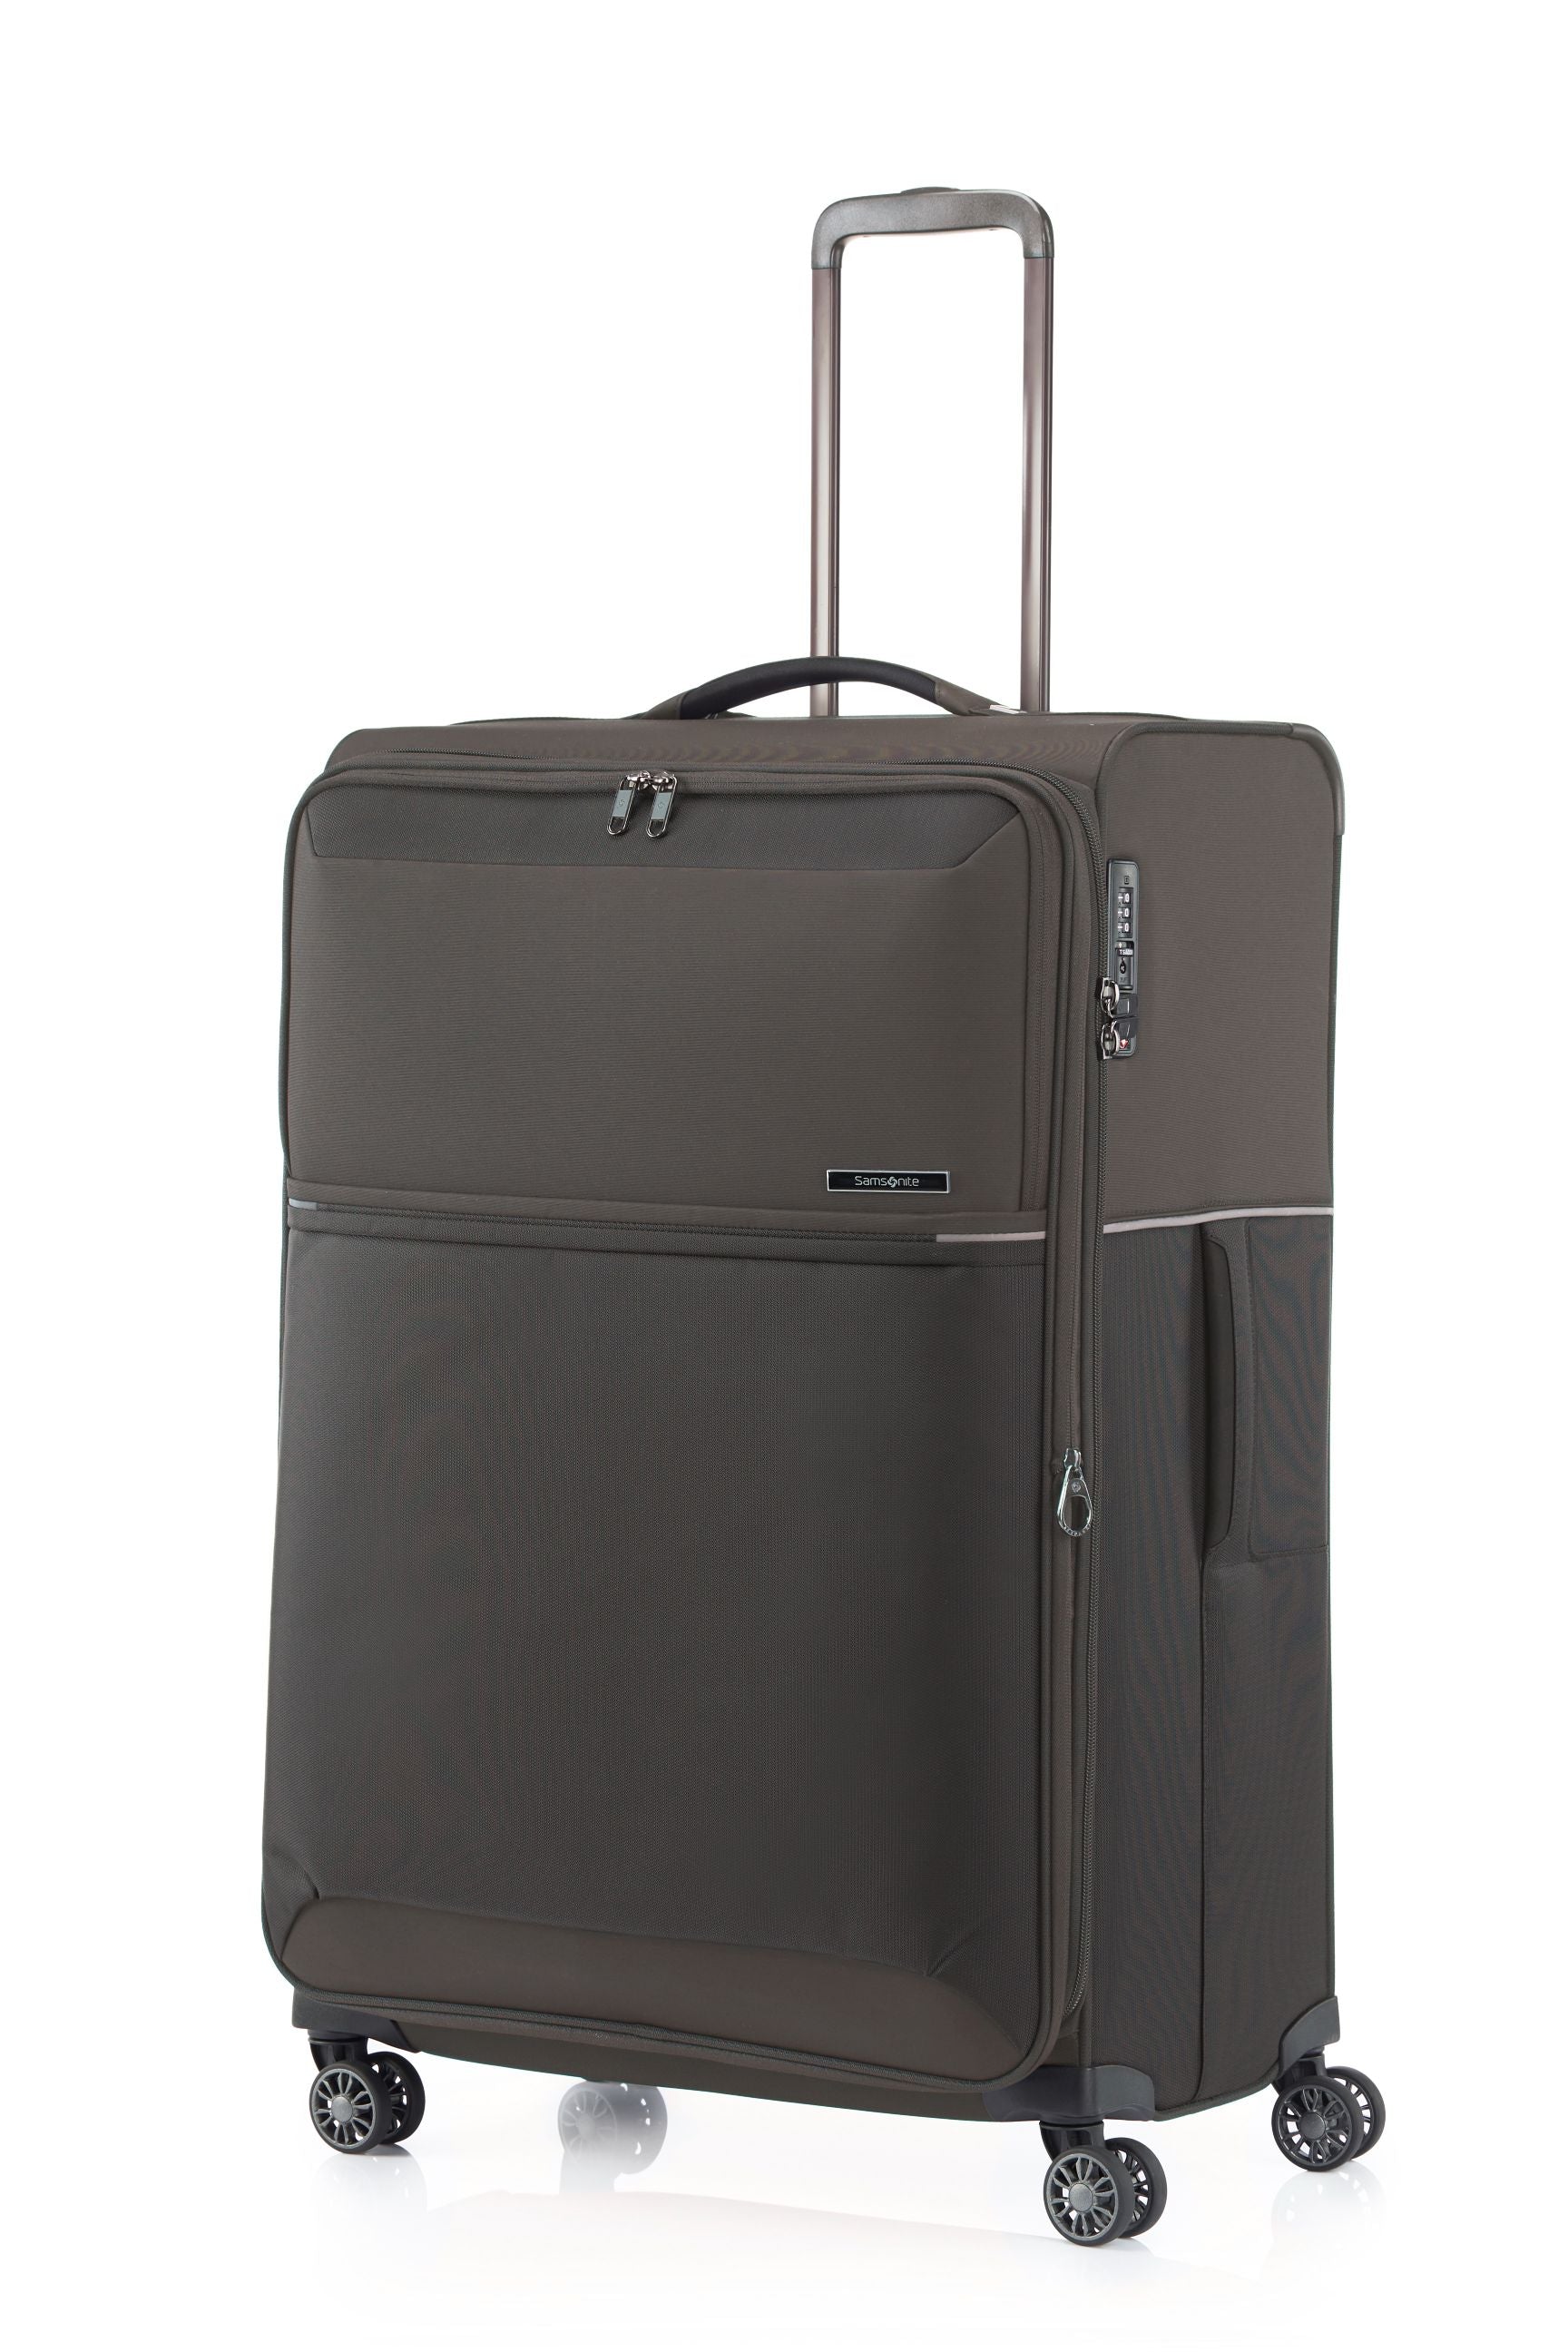 Samsonite 73HR 78cm Large Suitcase - Platinum Grey-1